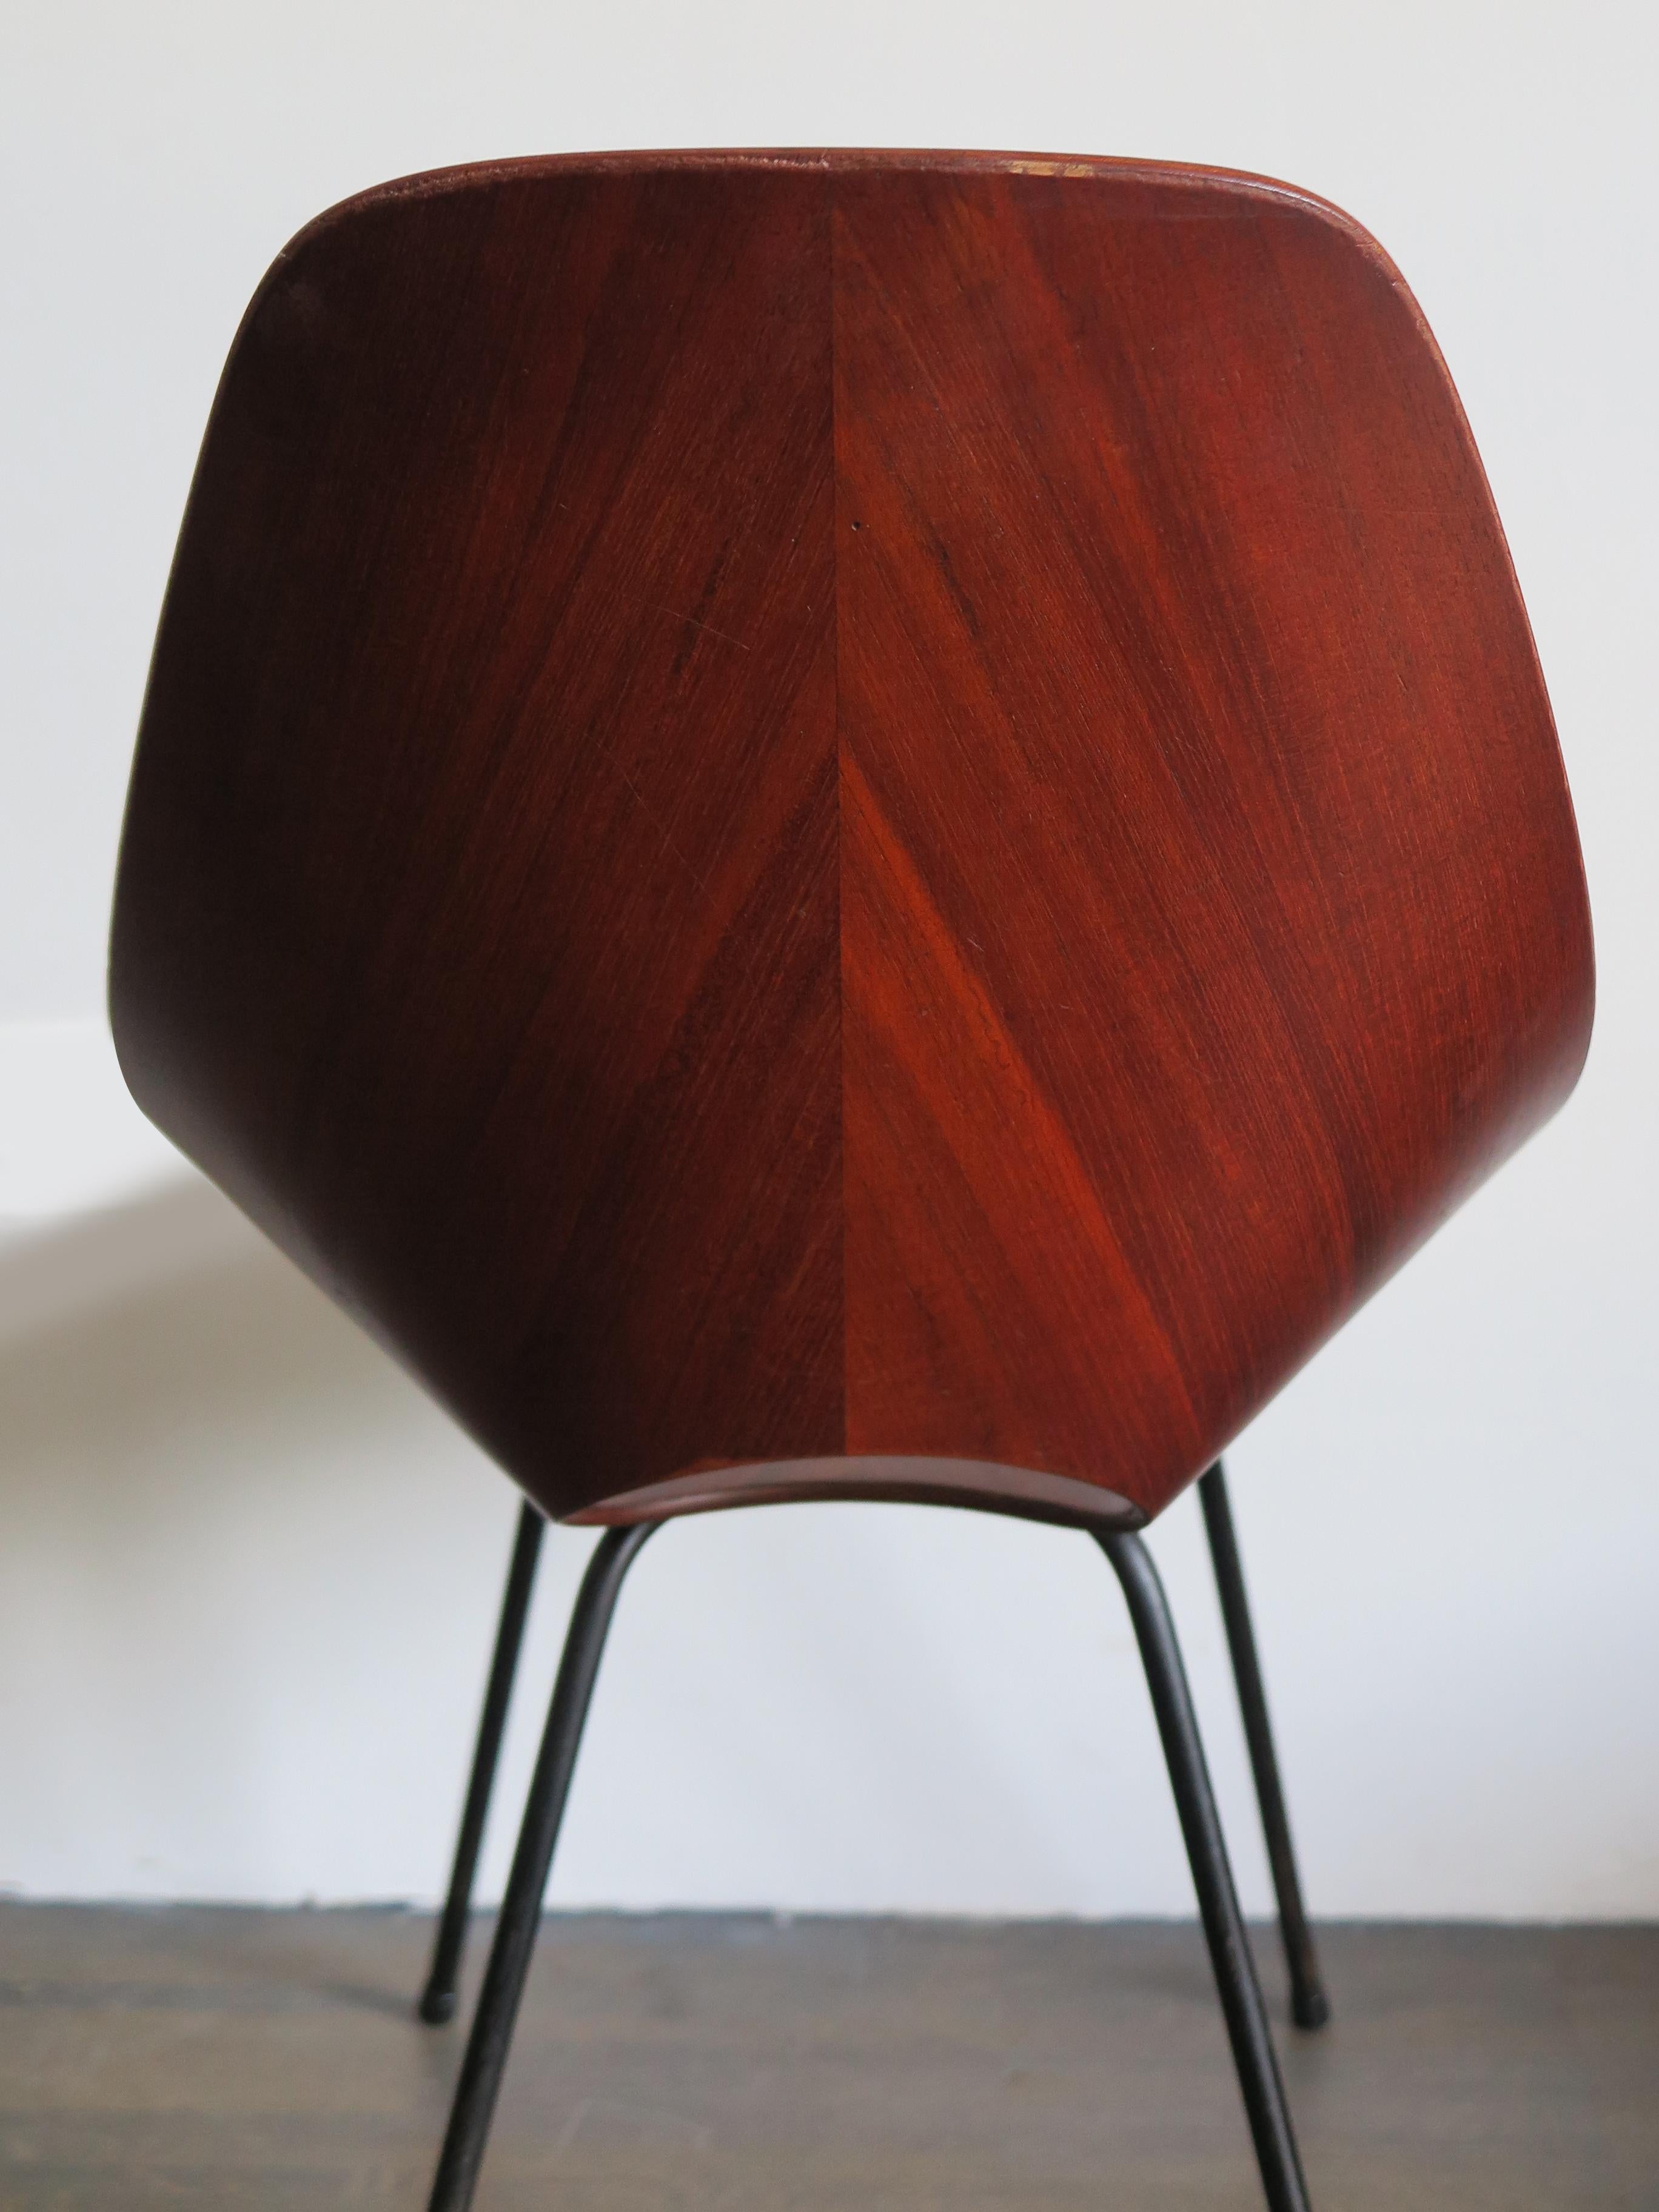 Vittorio Nobili Italian Wood Chairs Model Medea for Fratelli Tagliabue, 1950s For Sale 3